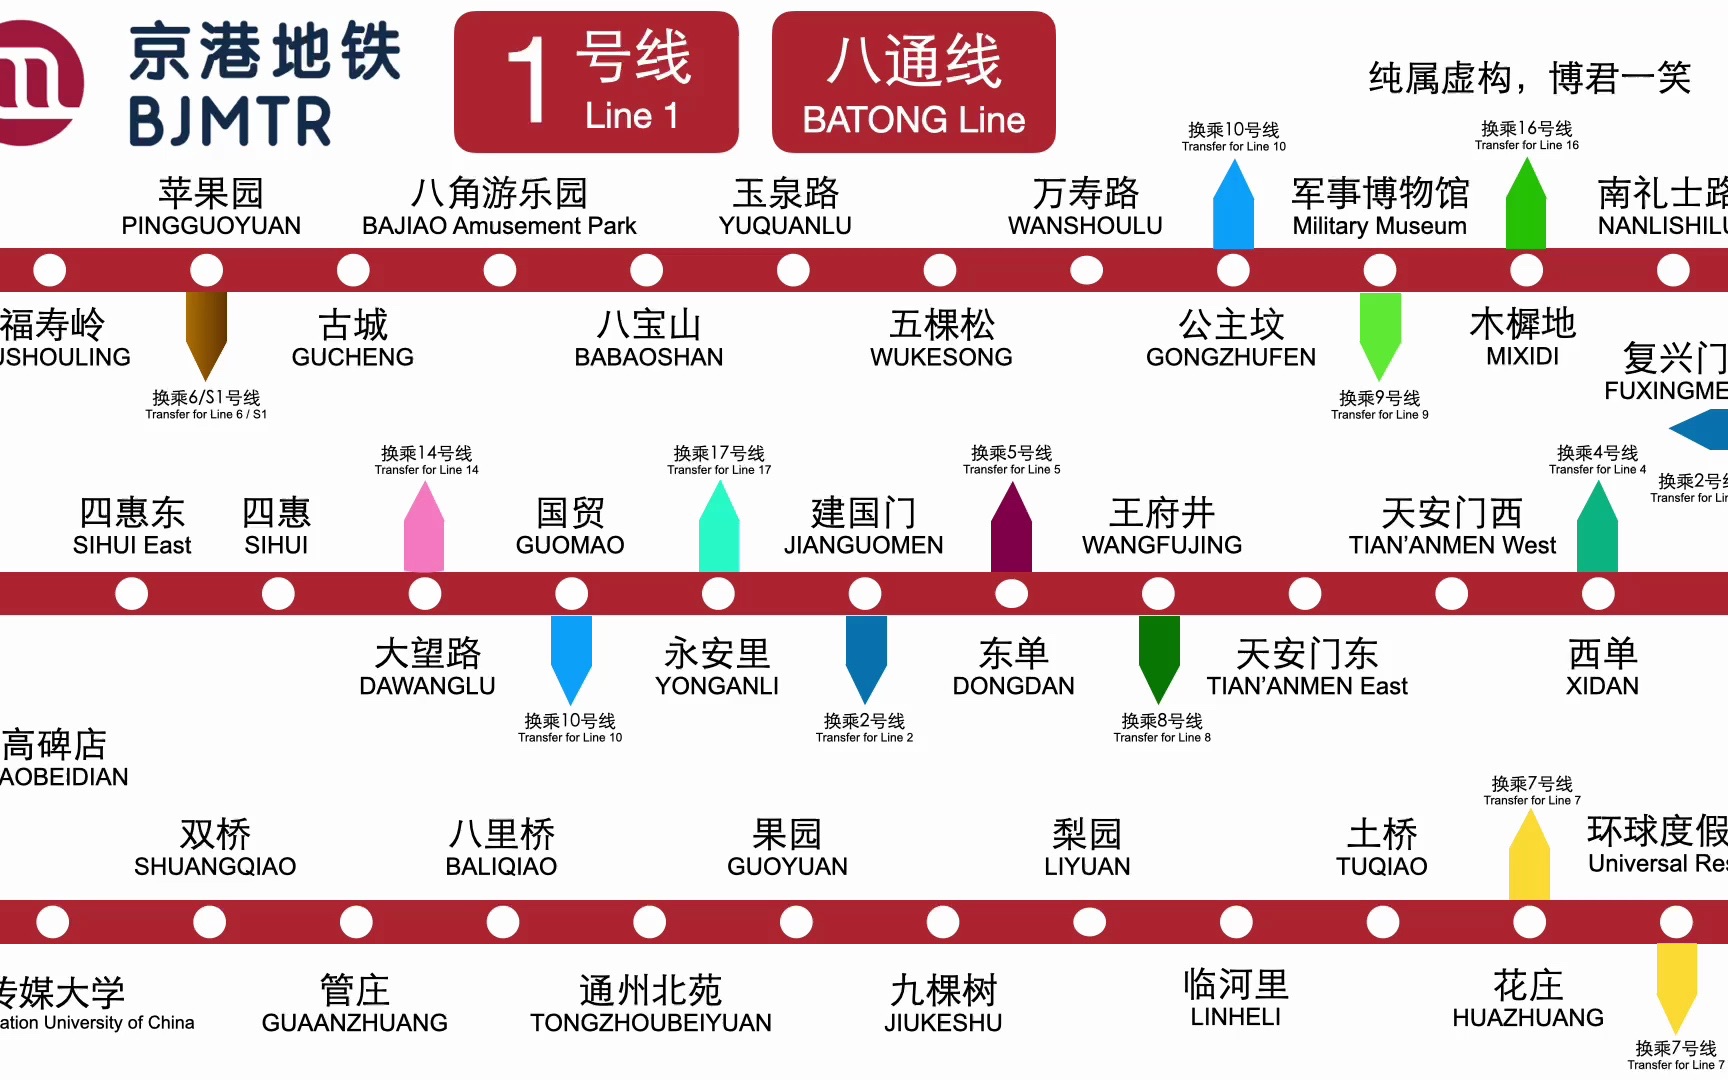 【京港地铁】如果北京地铁1号线八通线是由京港地铁运营的